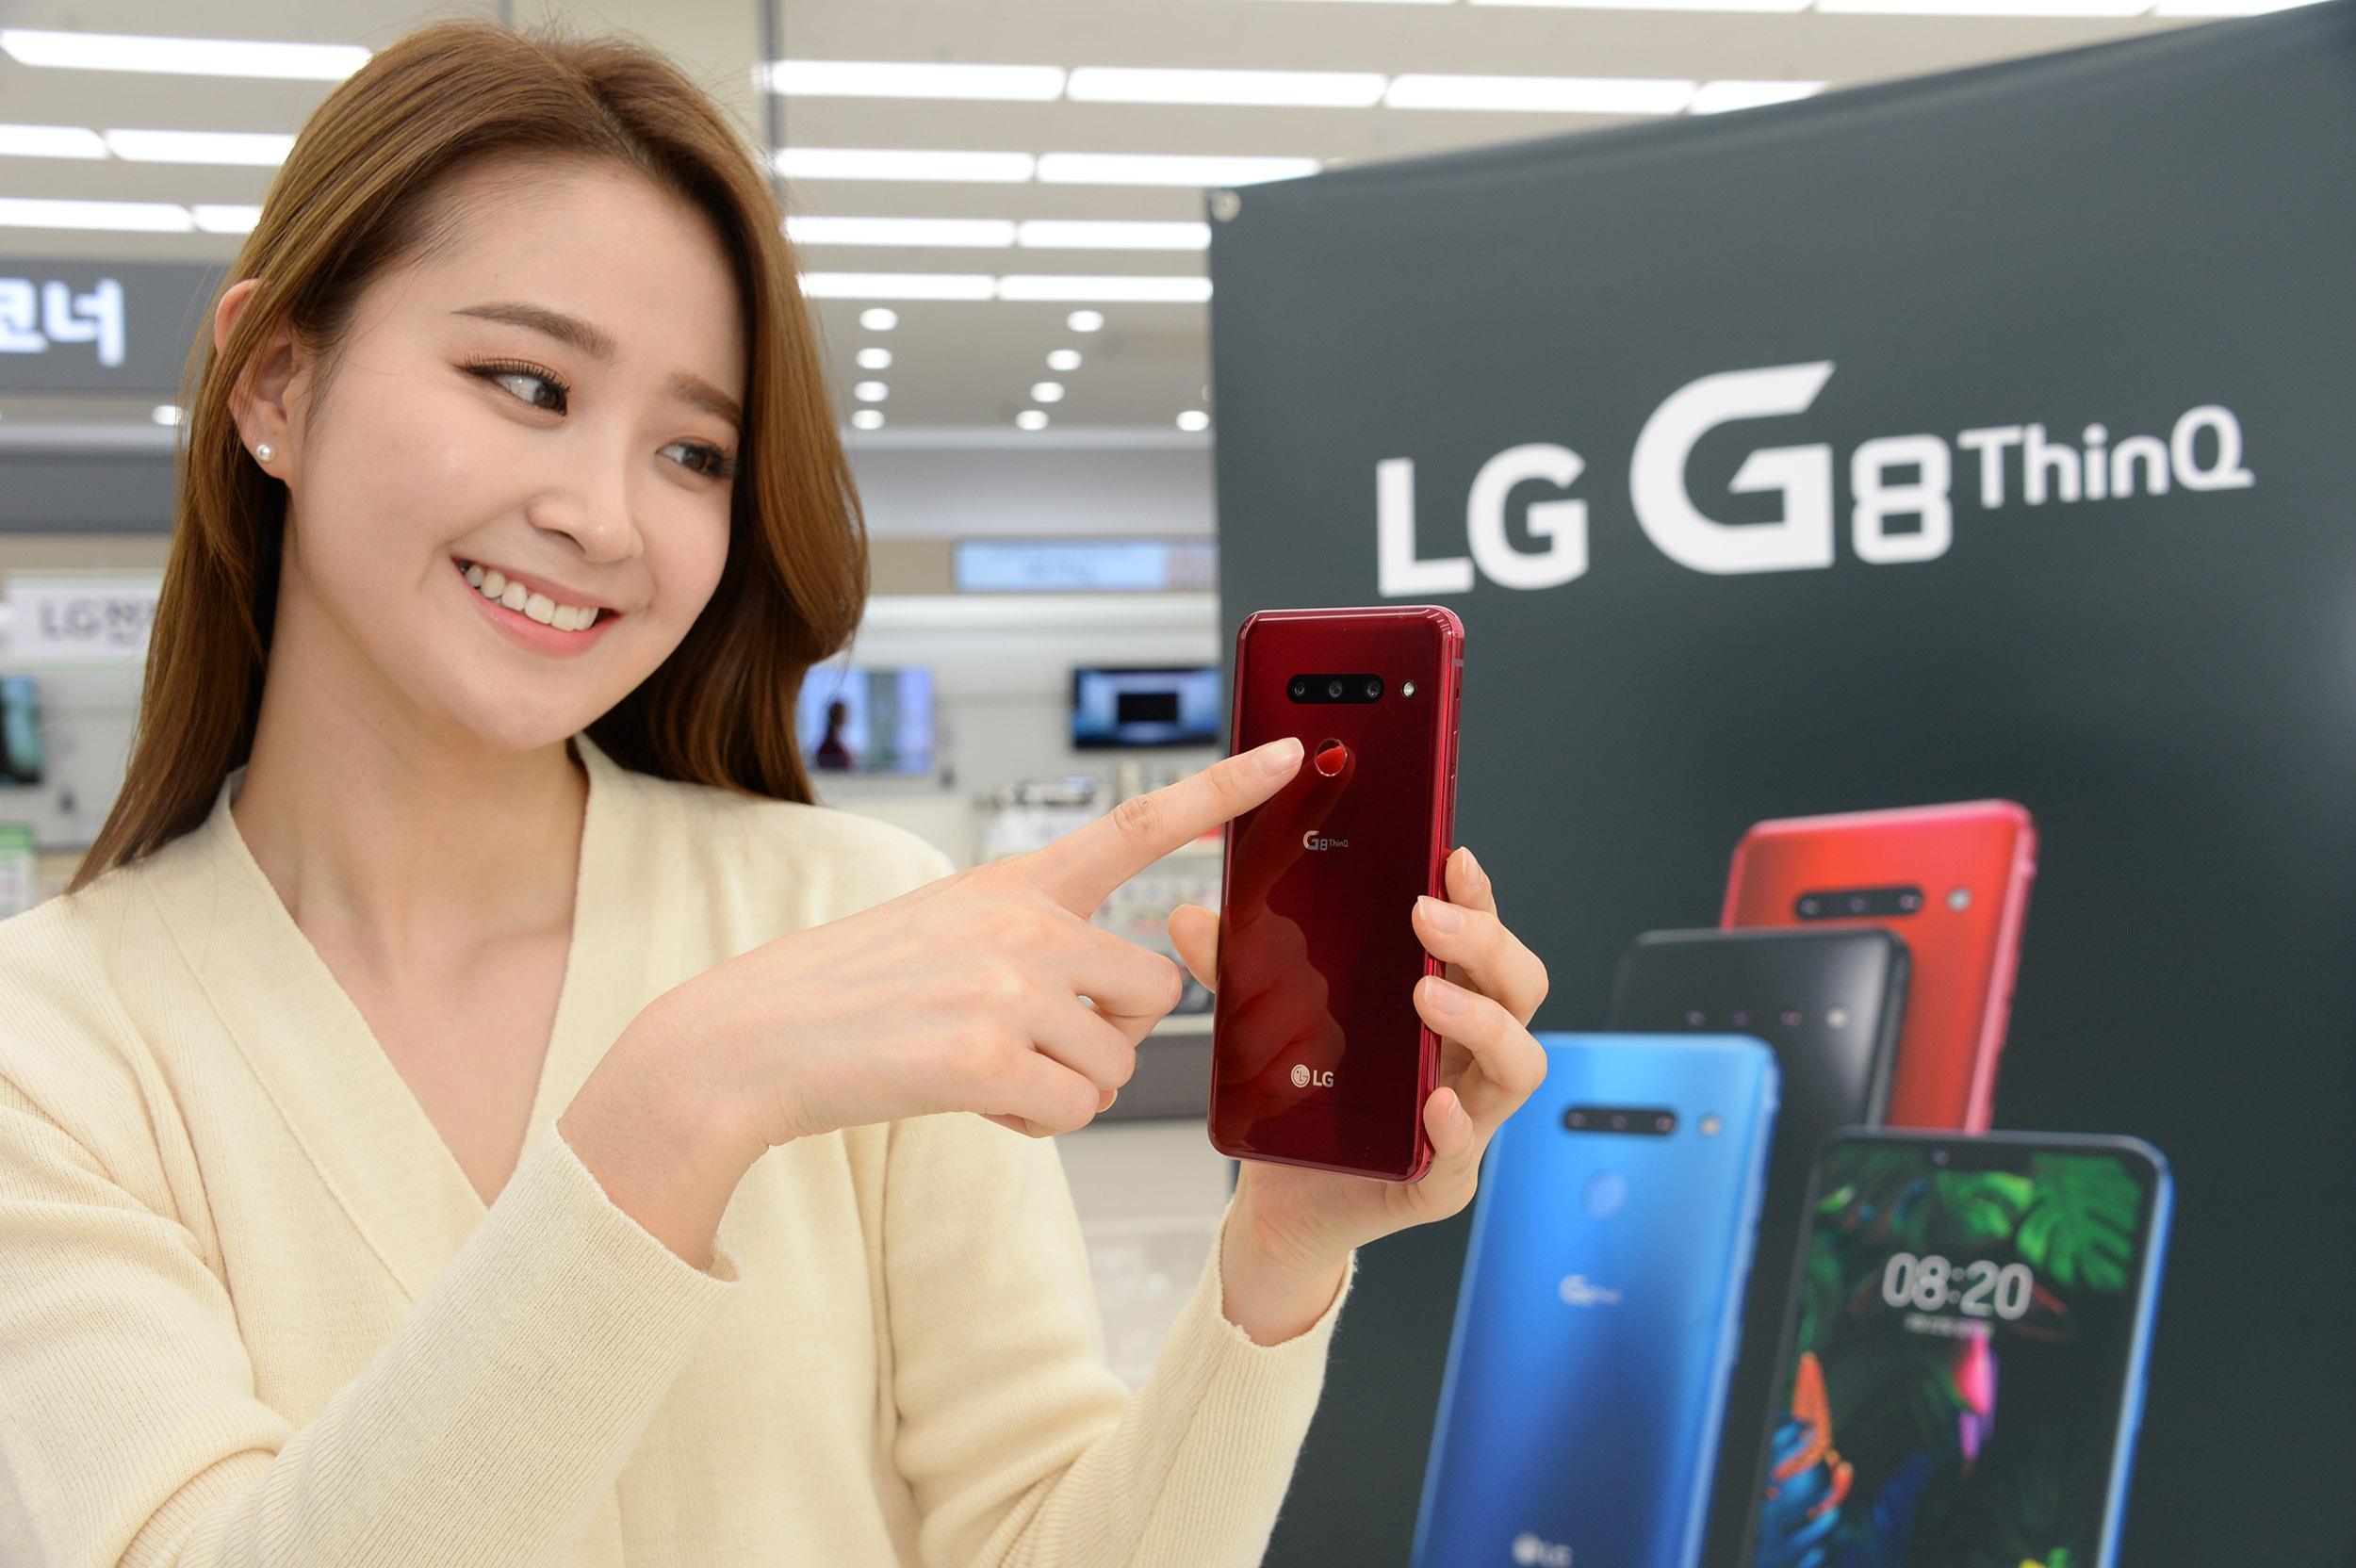 7일, 모델이 LG 베스트샵 서울양평점에서 LG G8 ThinQ의 깔끔한 디자인을 소개하고 있다. LG G8 ThinQ후면은 카메라 모듈부 돌출이 전혀 없고, 전면에는 수화부 리시버의 작은 흔적조차 없앤 매끈한 디자인을 자랑한다.